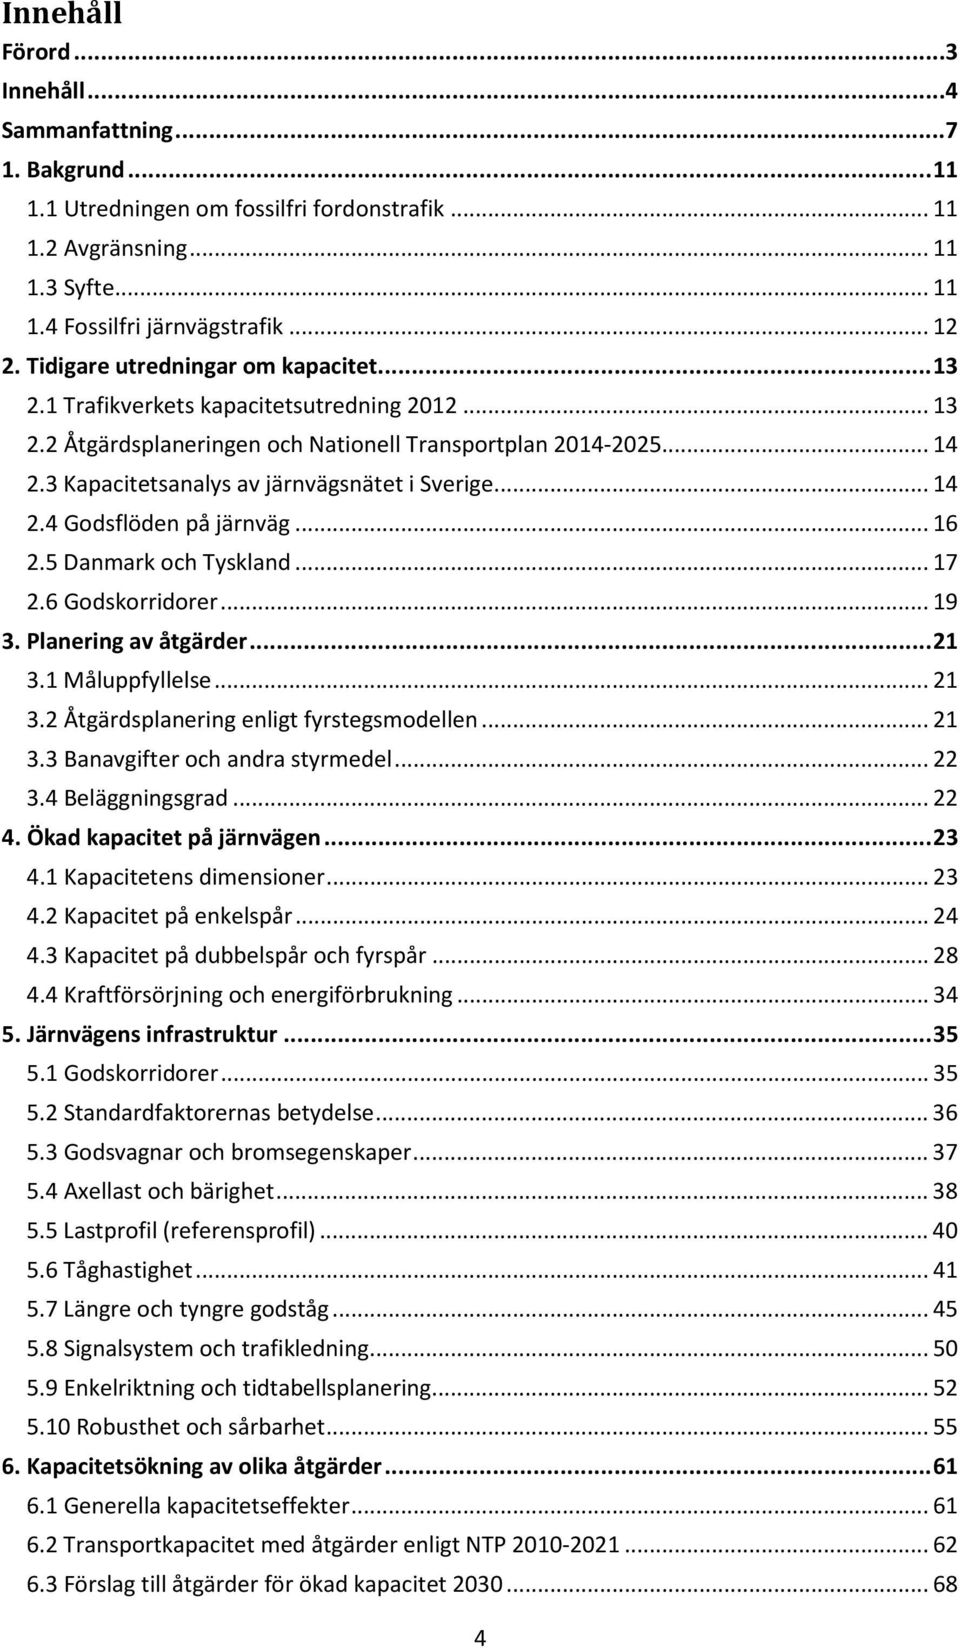 3 Kapacitetsanalys av järnvägsnätet i Sverige... 14 2.4 Godsflöden på järnväg... 16 2.5 Danmark och Tyskland... 17 2.6 Godskorridorer... 19 3. Planering av åtgärder... 21 3.